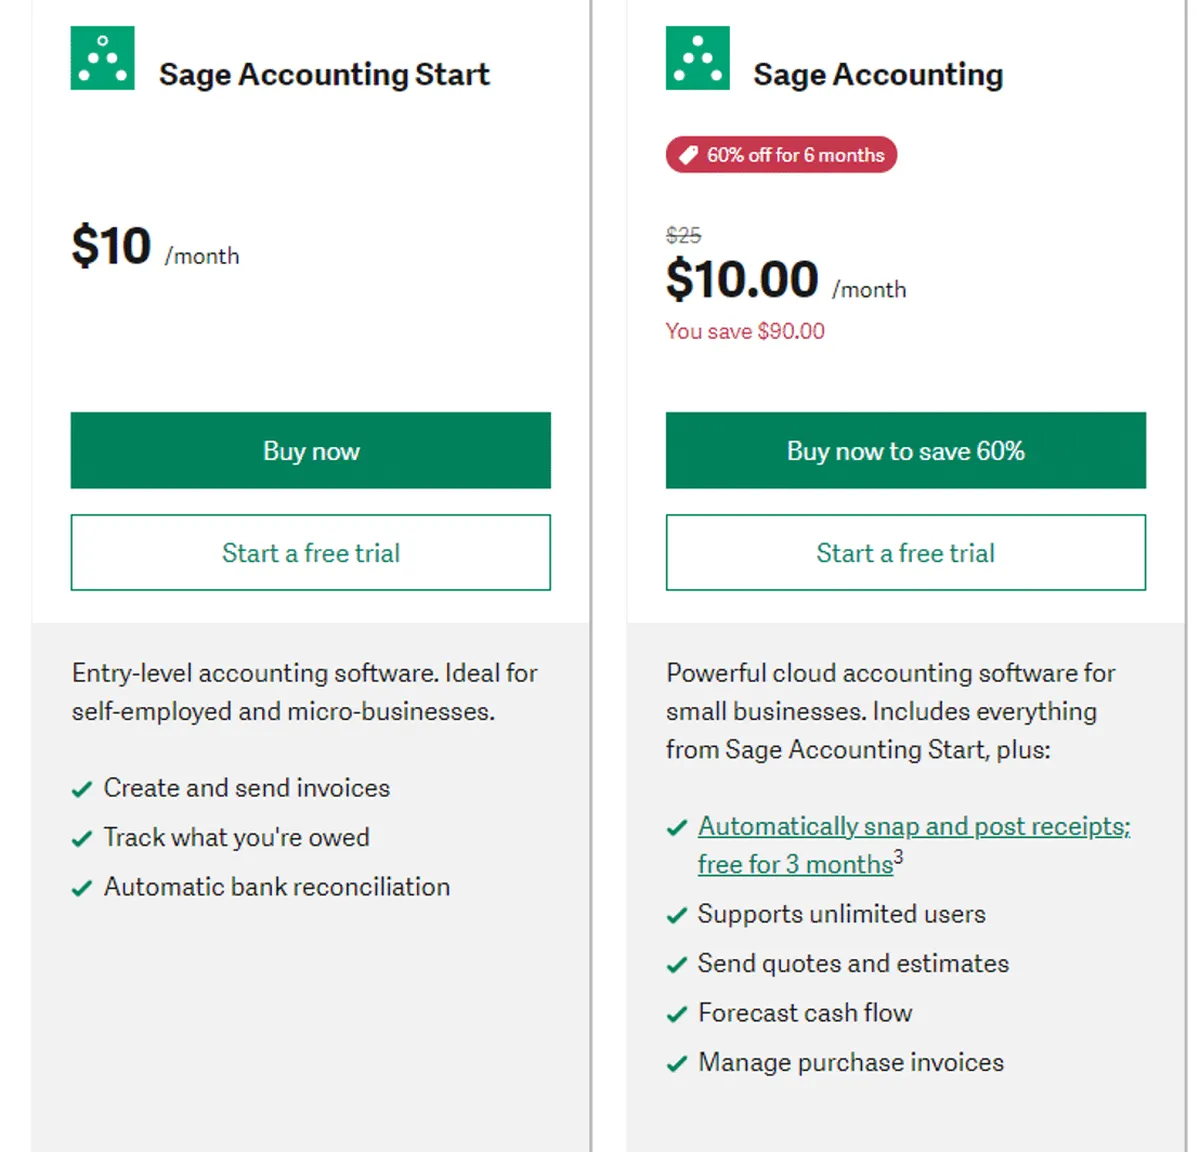 Sage Accounting Pricing Plan